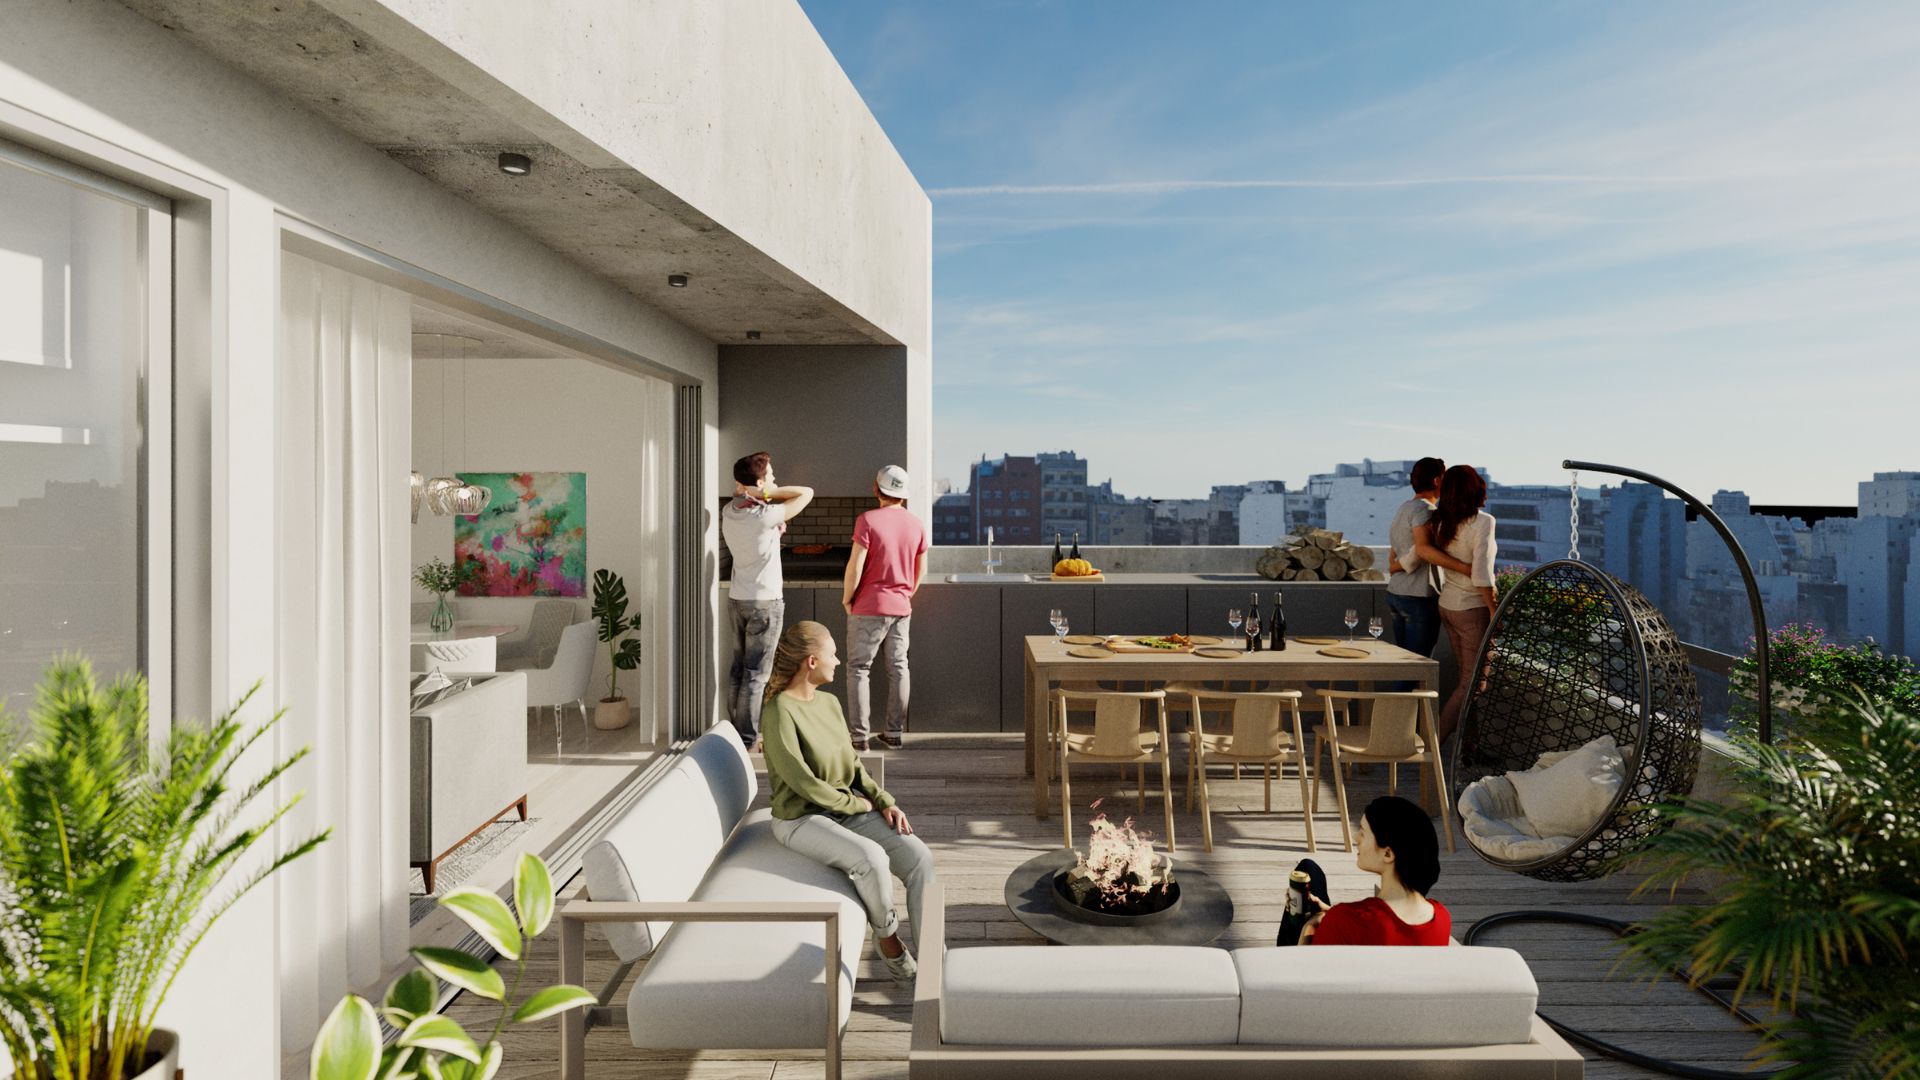 Diseñado exclusivamente para alquileres temporarios, La Barceloneta, tendrá disponibles distintos penthouse con terrazas a cielo abierto y una vista privilegiada (Crédito: Prensa Grupo Marting)